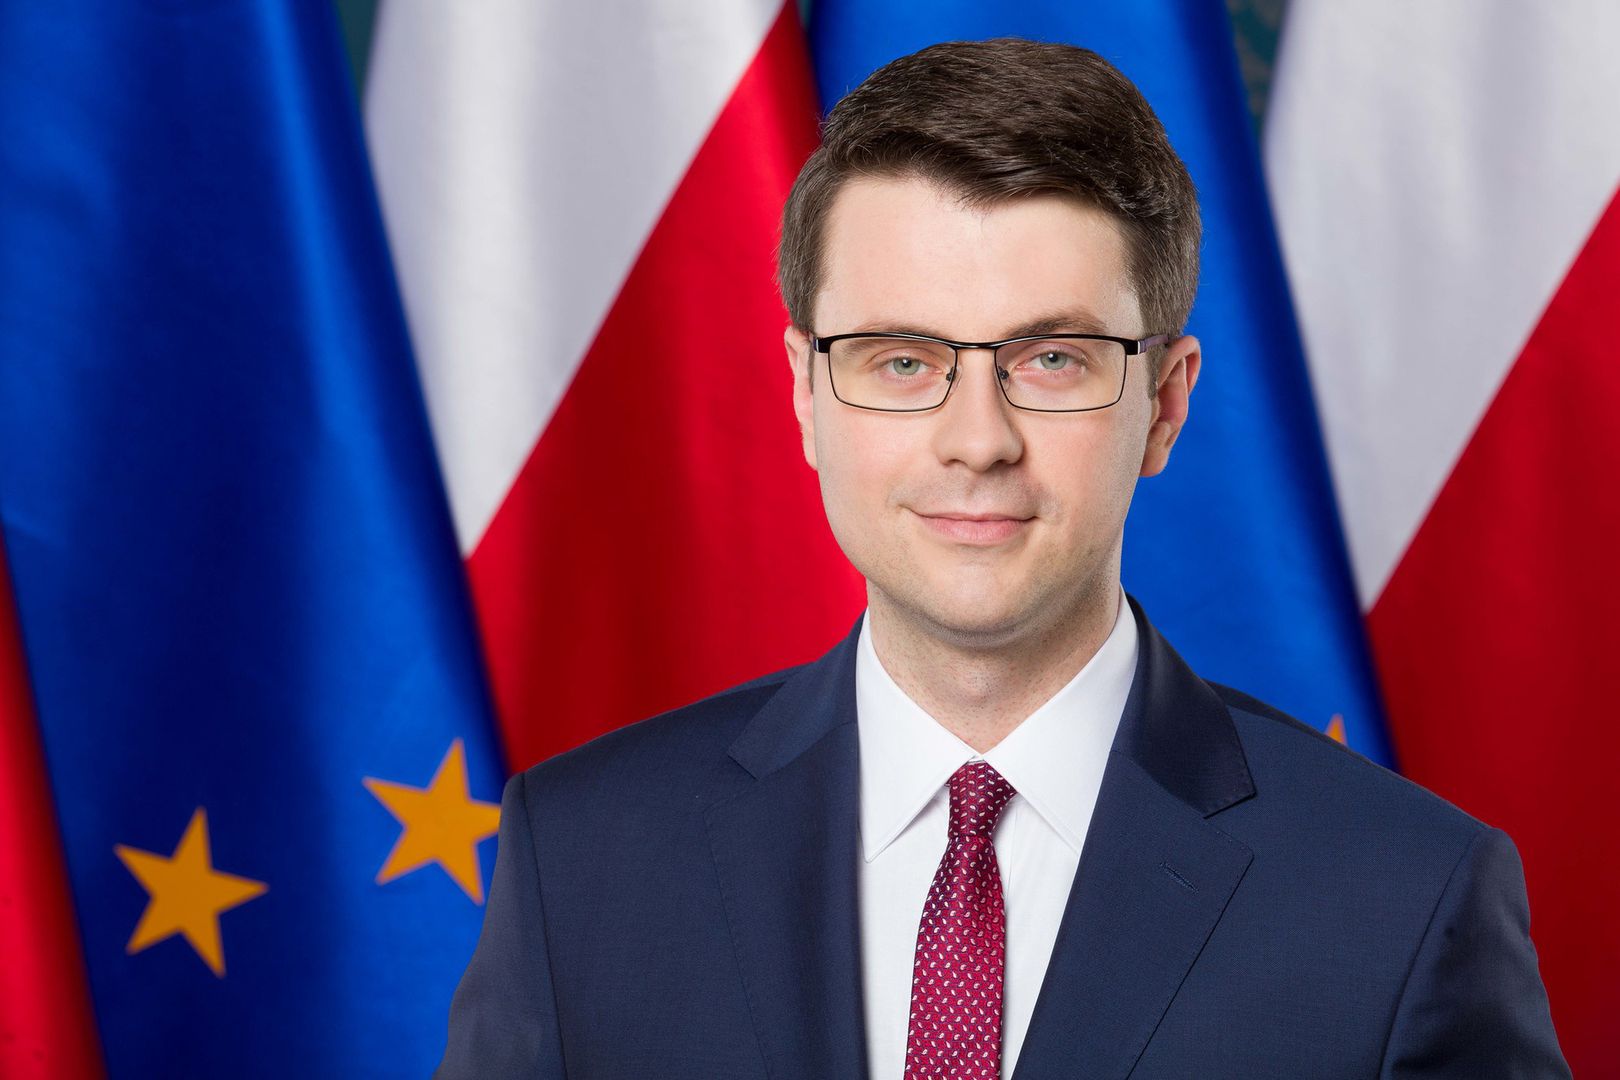 Co jeśli UE zabierze Polsce środki? Deklaracja rzecznika rządu